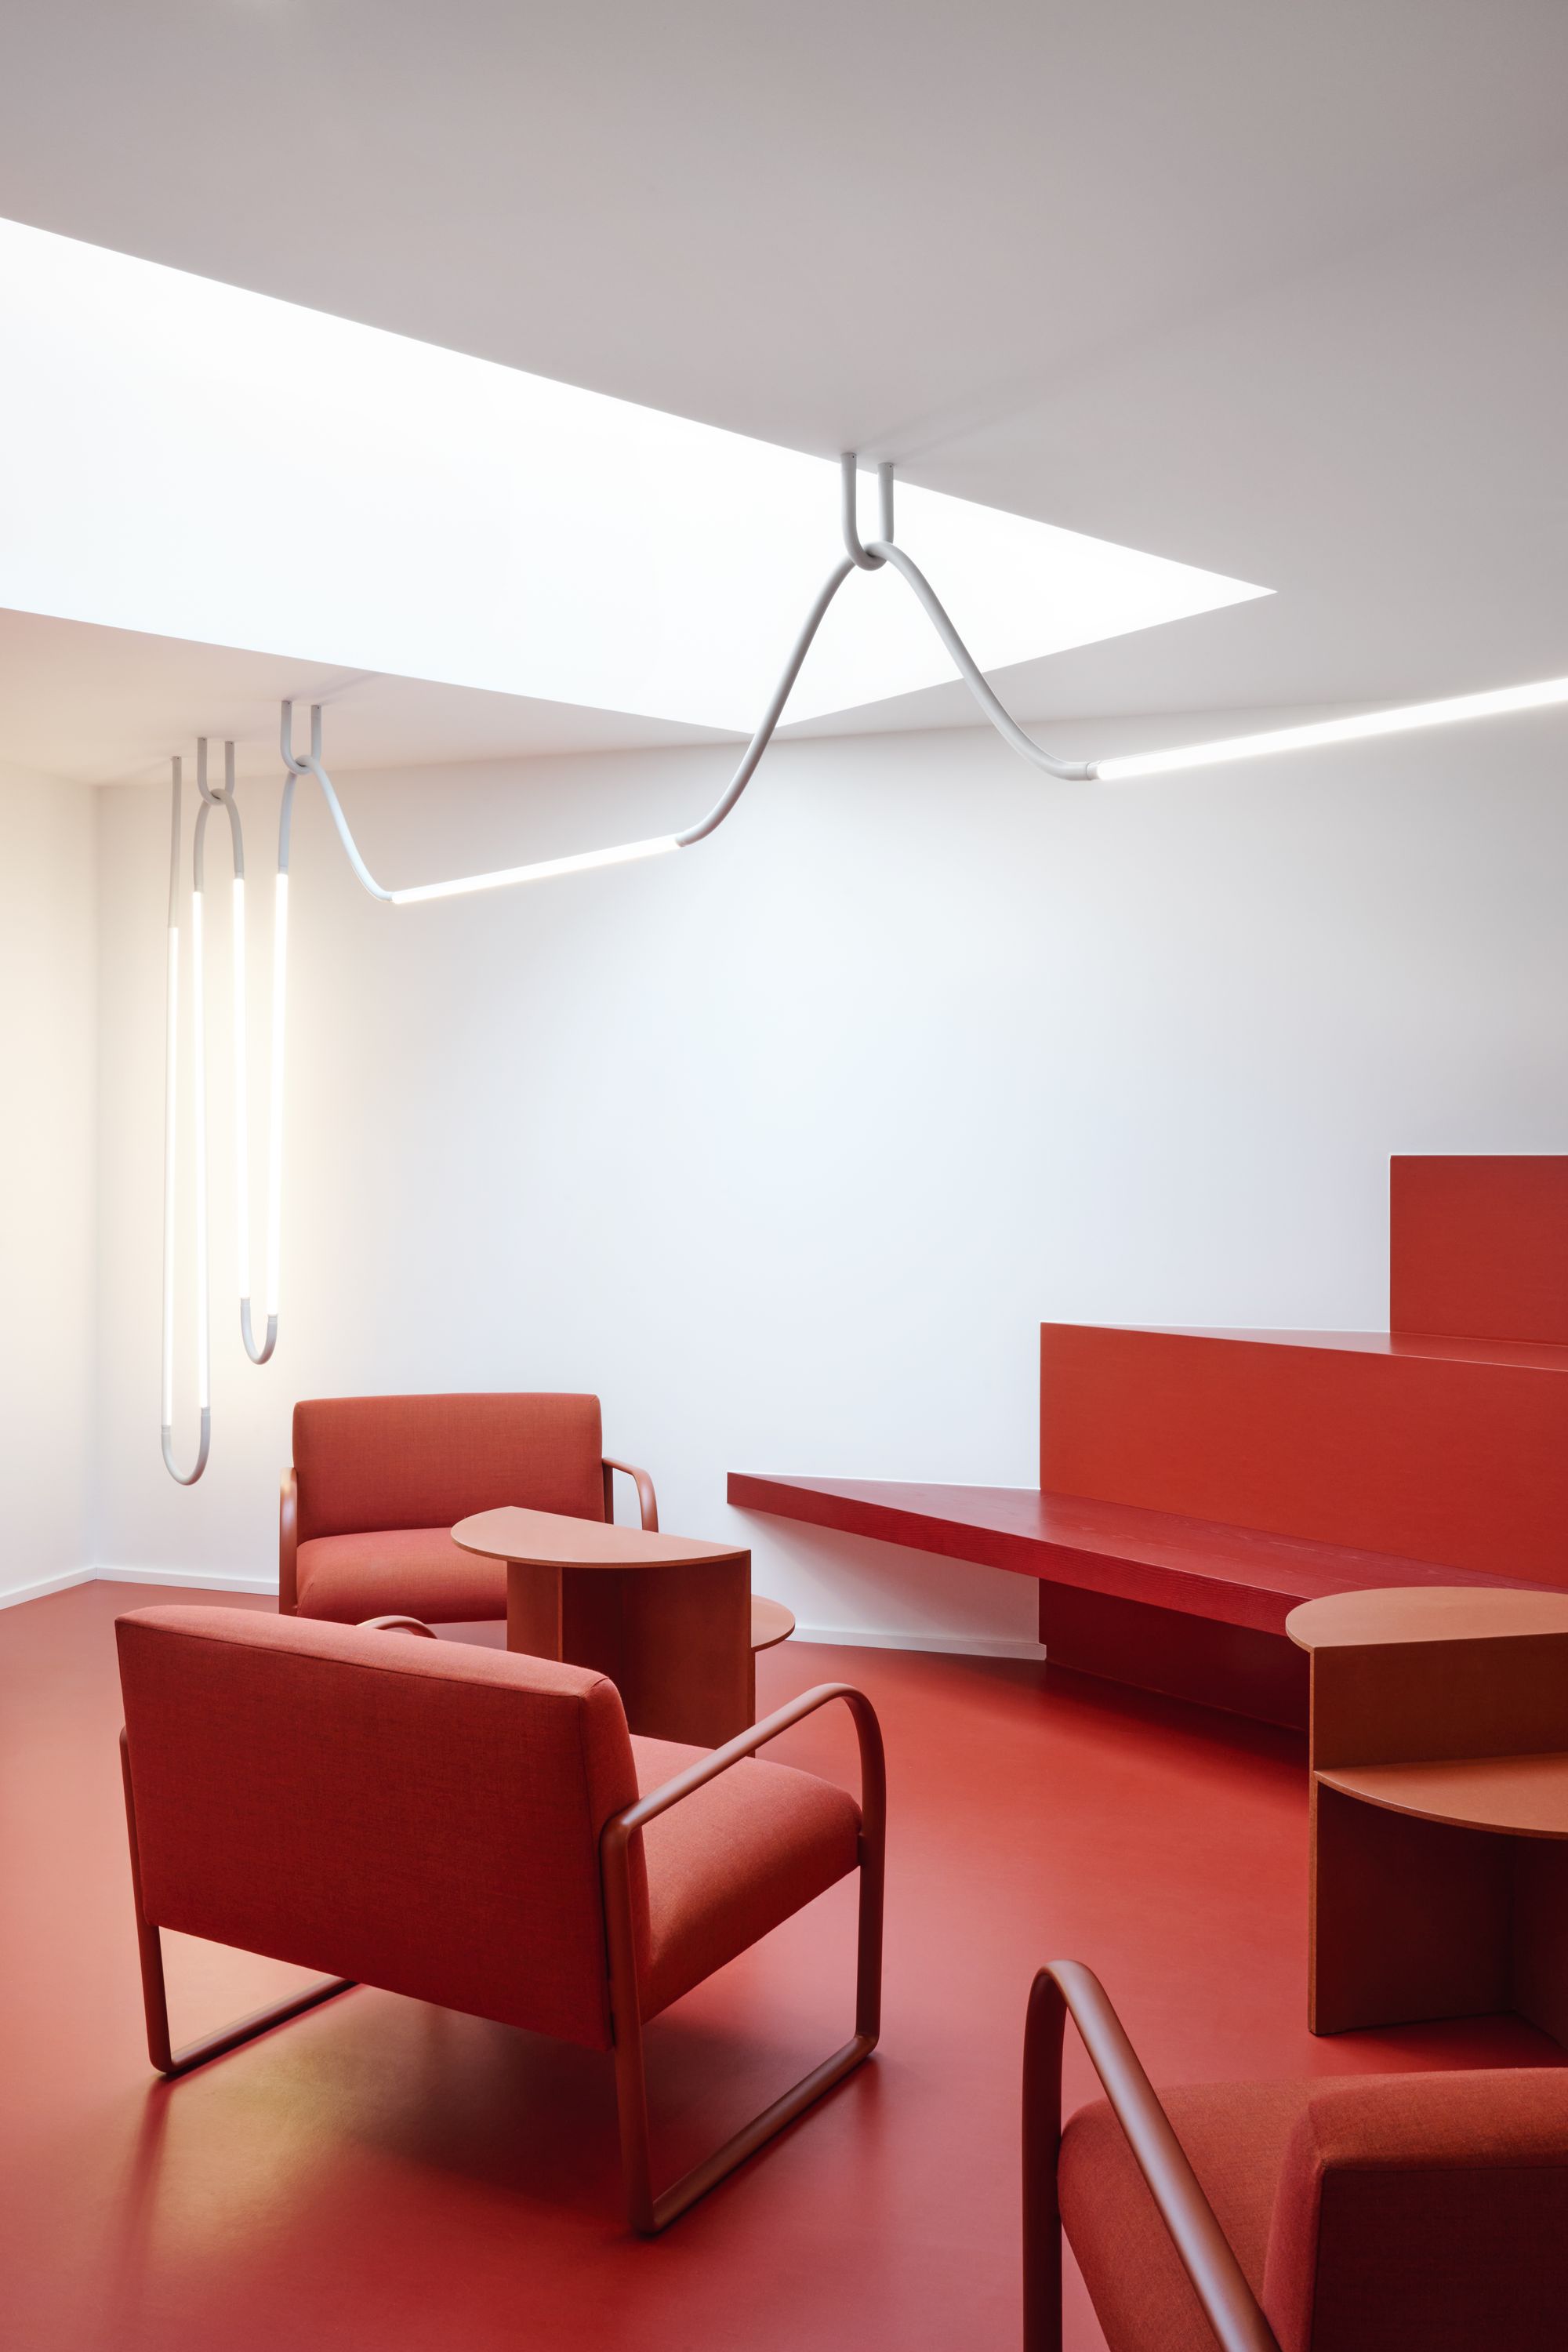 图片[2]|慕尼黑办事处|ART-Arrakis | 建筑室内设计的创新与灵感